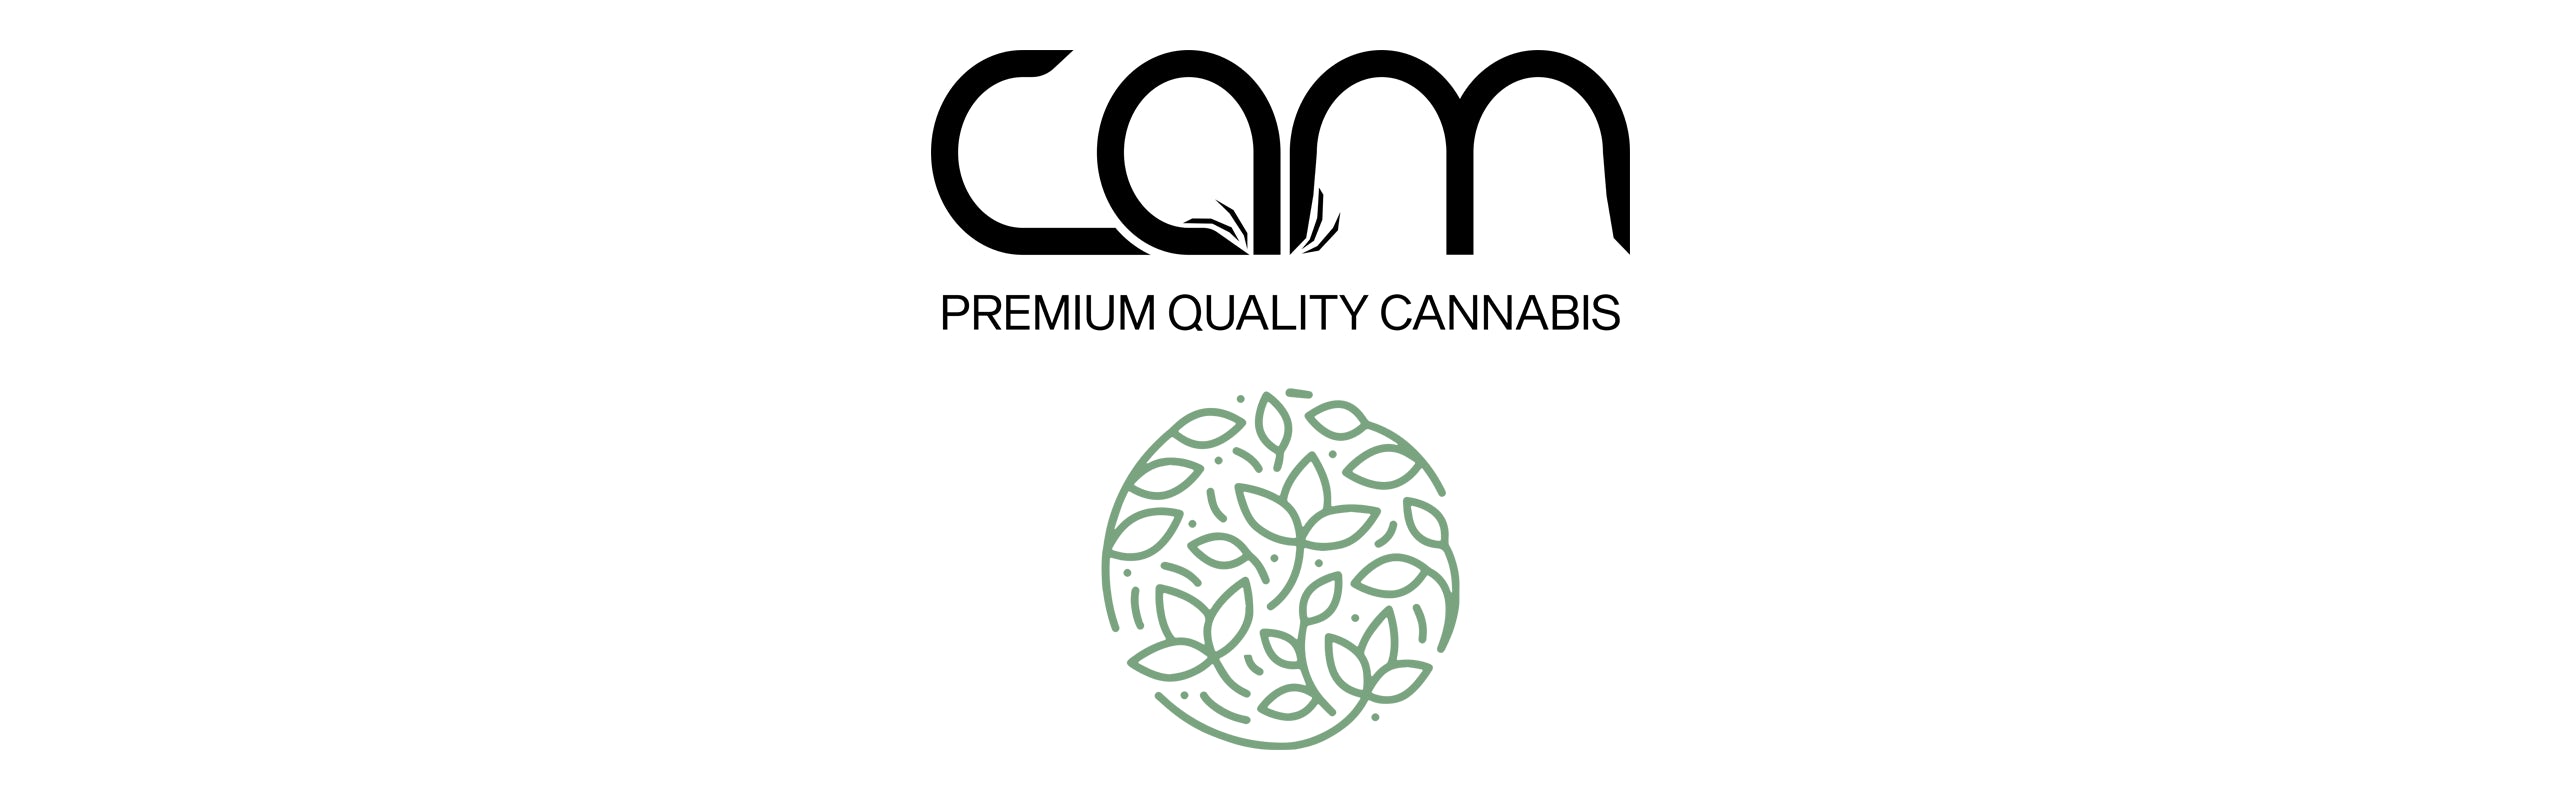 CAM banner